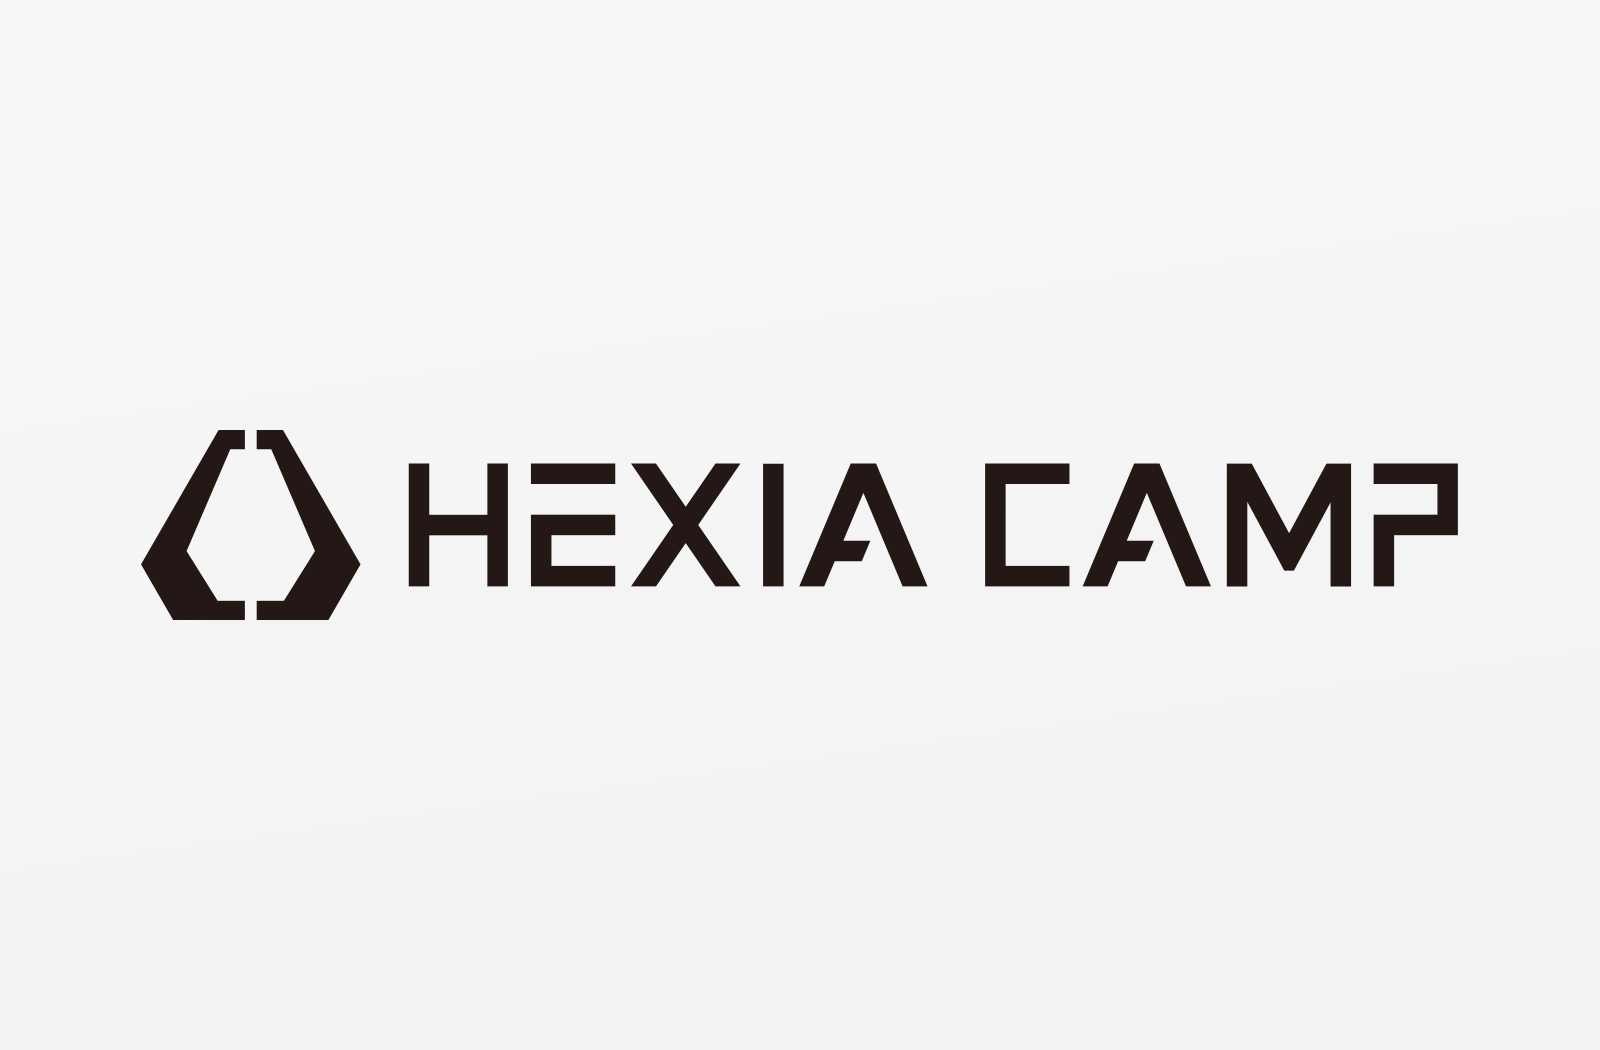 「HEXIA CAMP」様のロゴデザイン